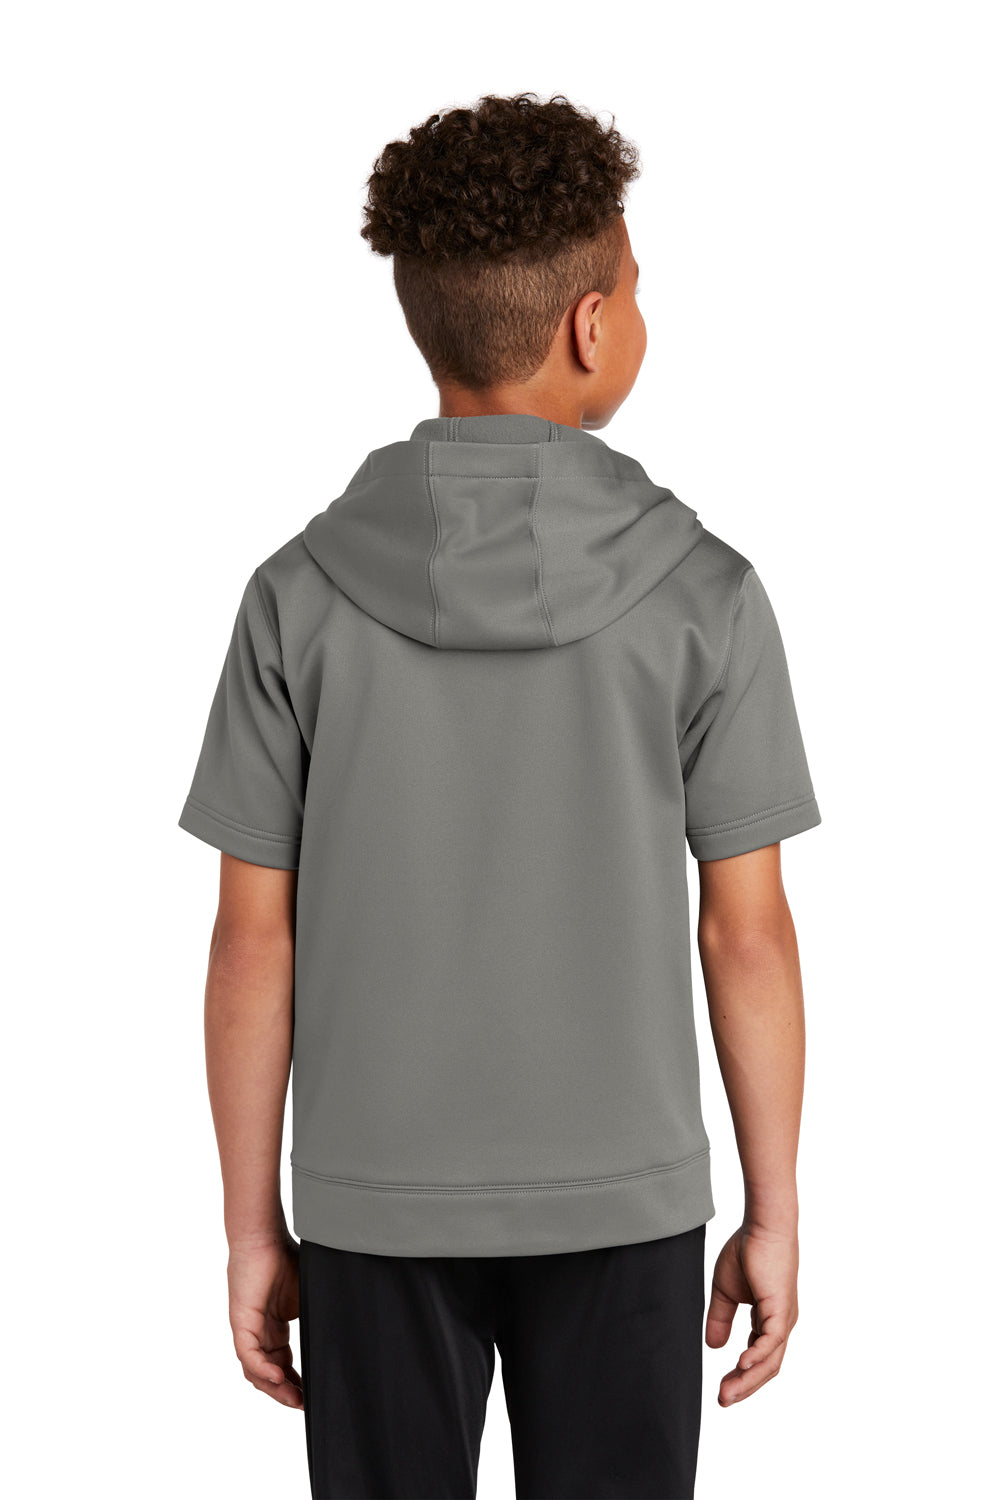 Sport-Tek Youth Fleece Short Sleeve Hooded Sweatshirt Hoodie Dark Smoke Grey Side